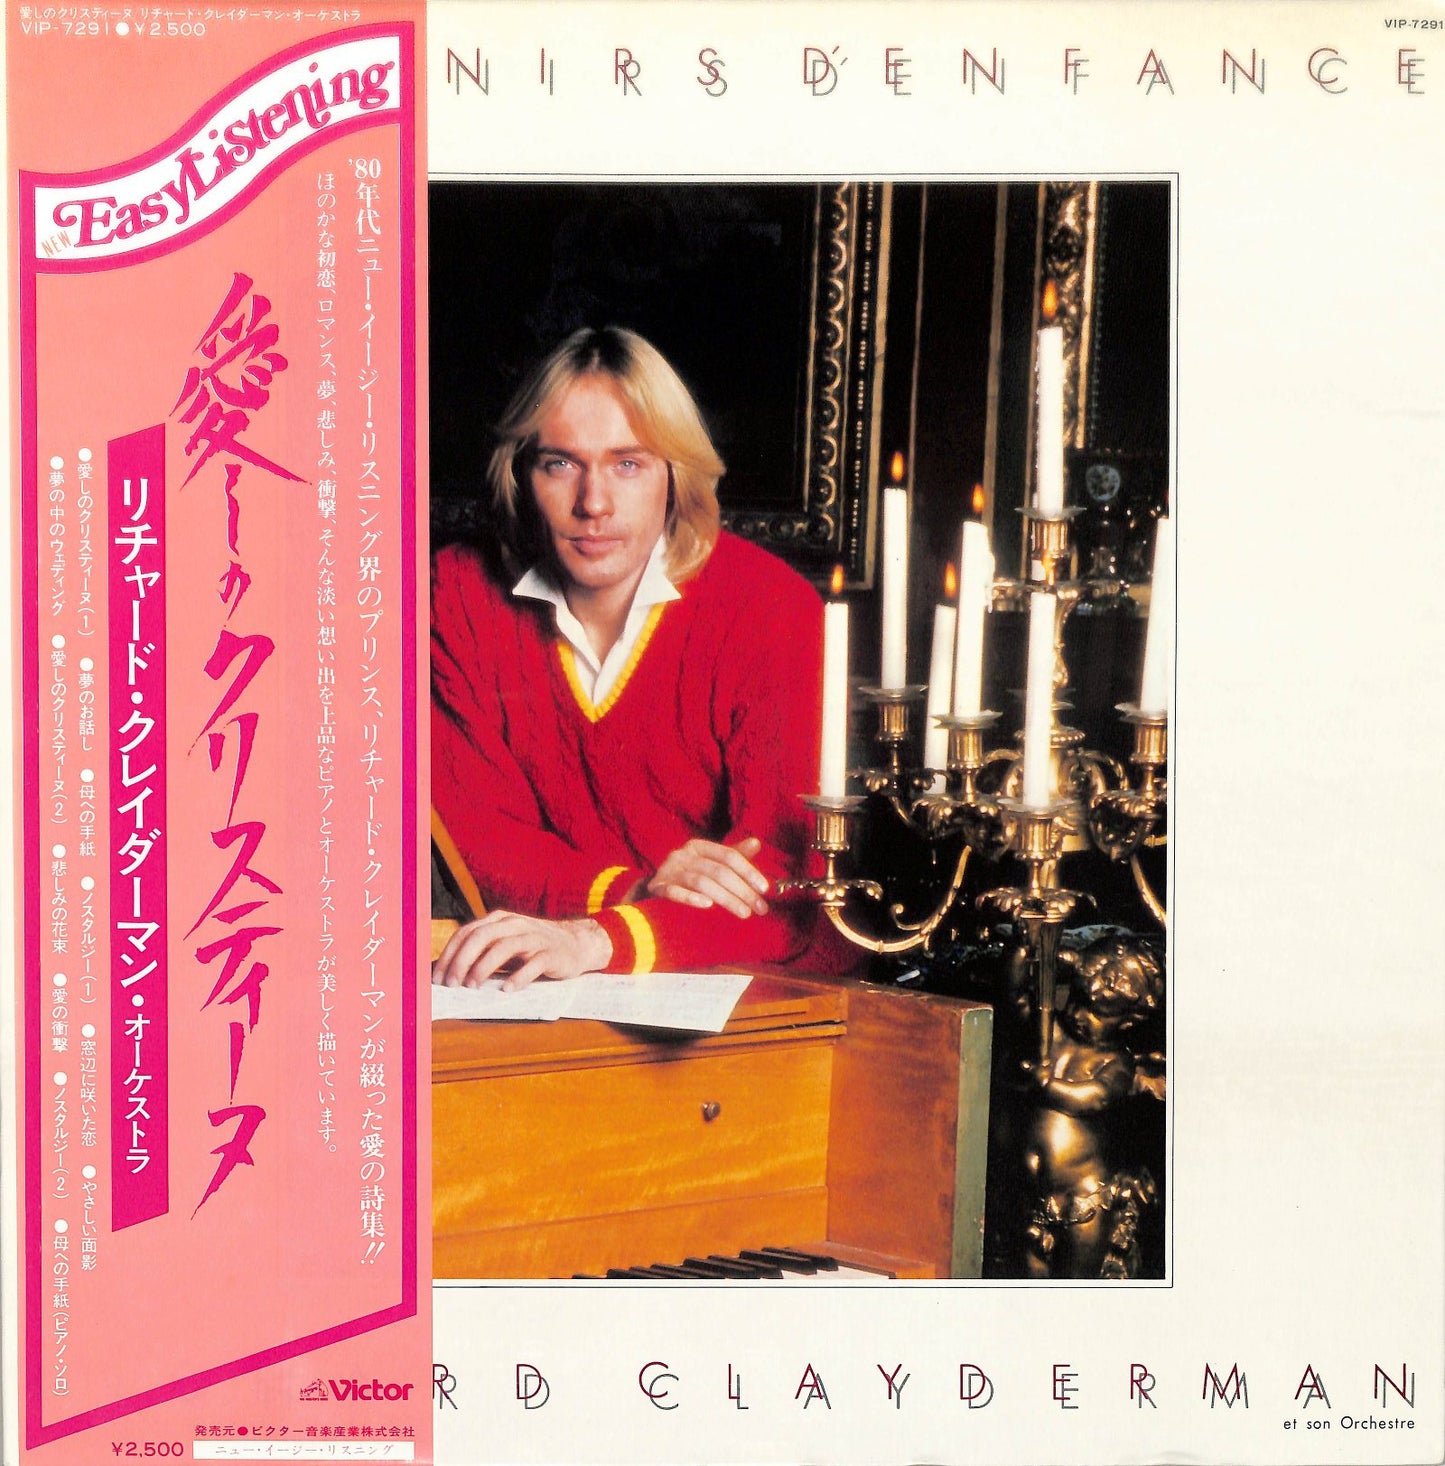 RICHARD CLAYDERMAN - Souvenirs D'Enfance